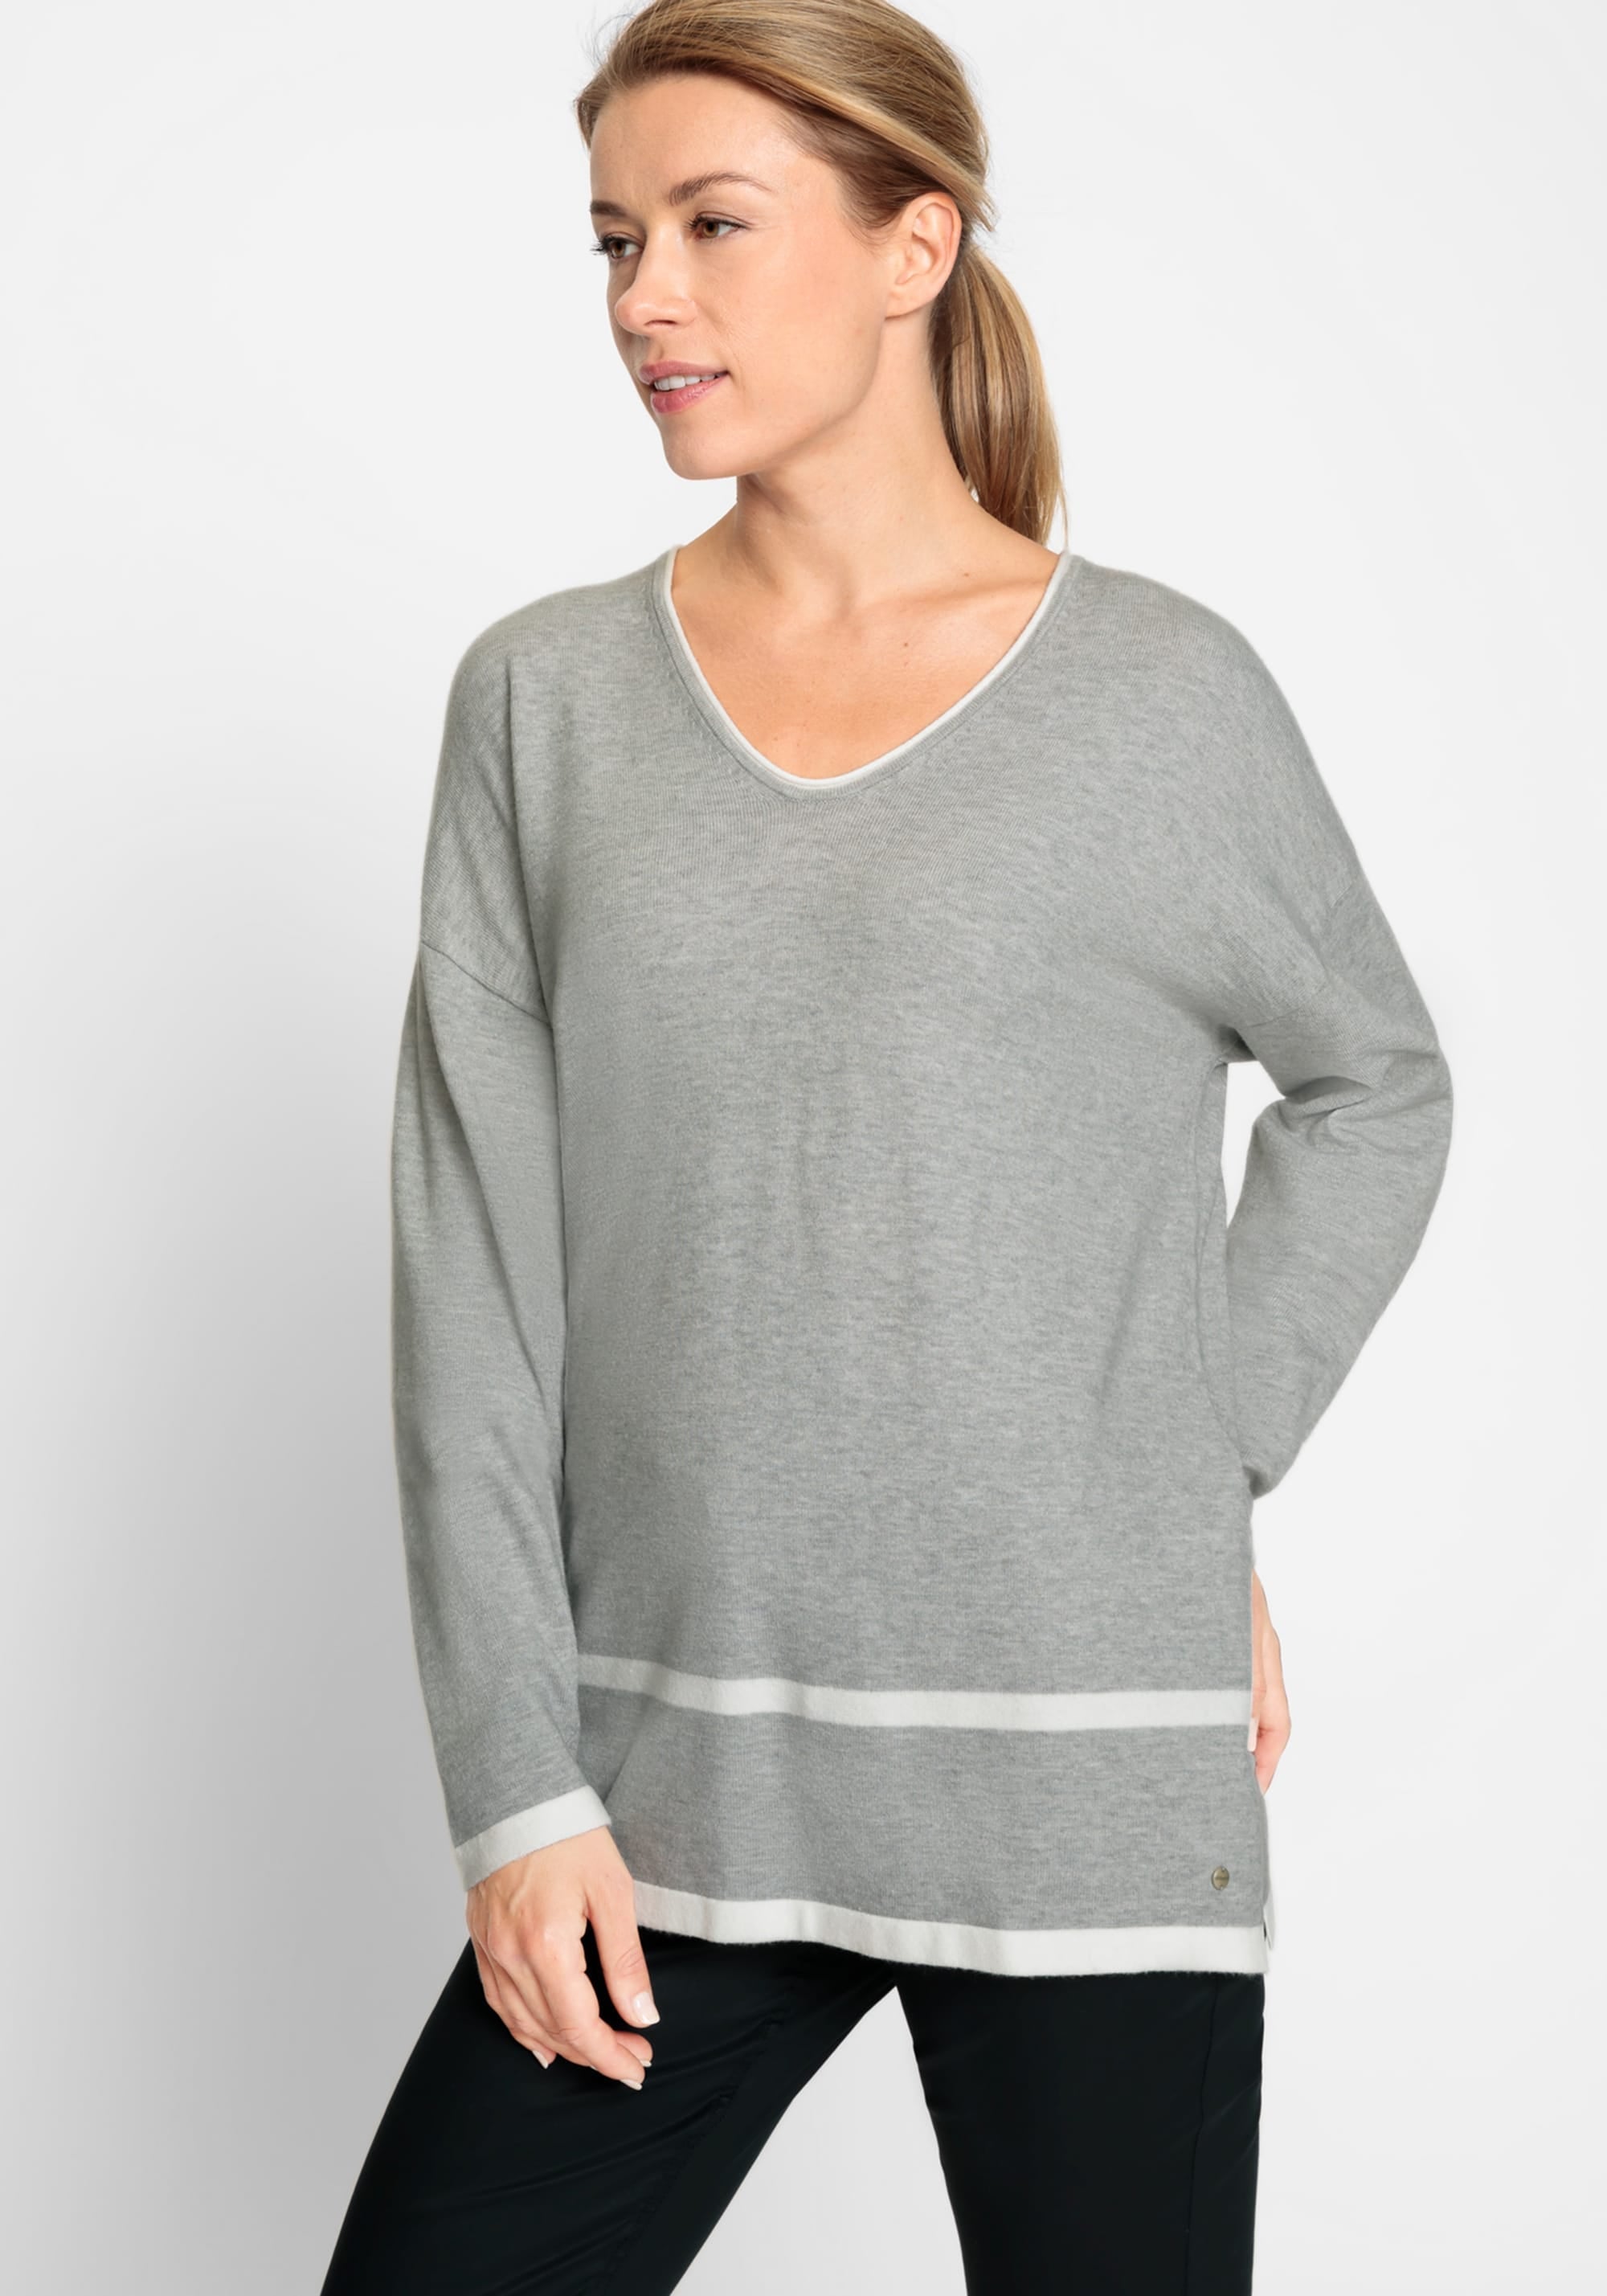 Long Sleeve V-Neck Sweater - Olsen Fashion Canada